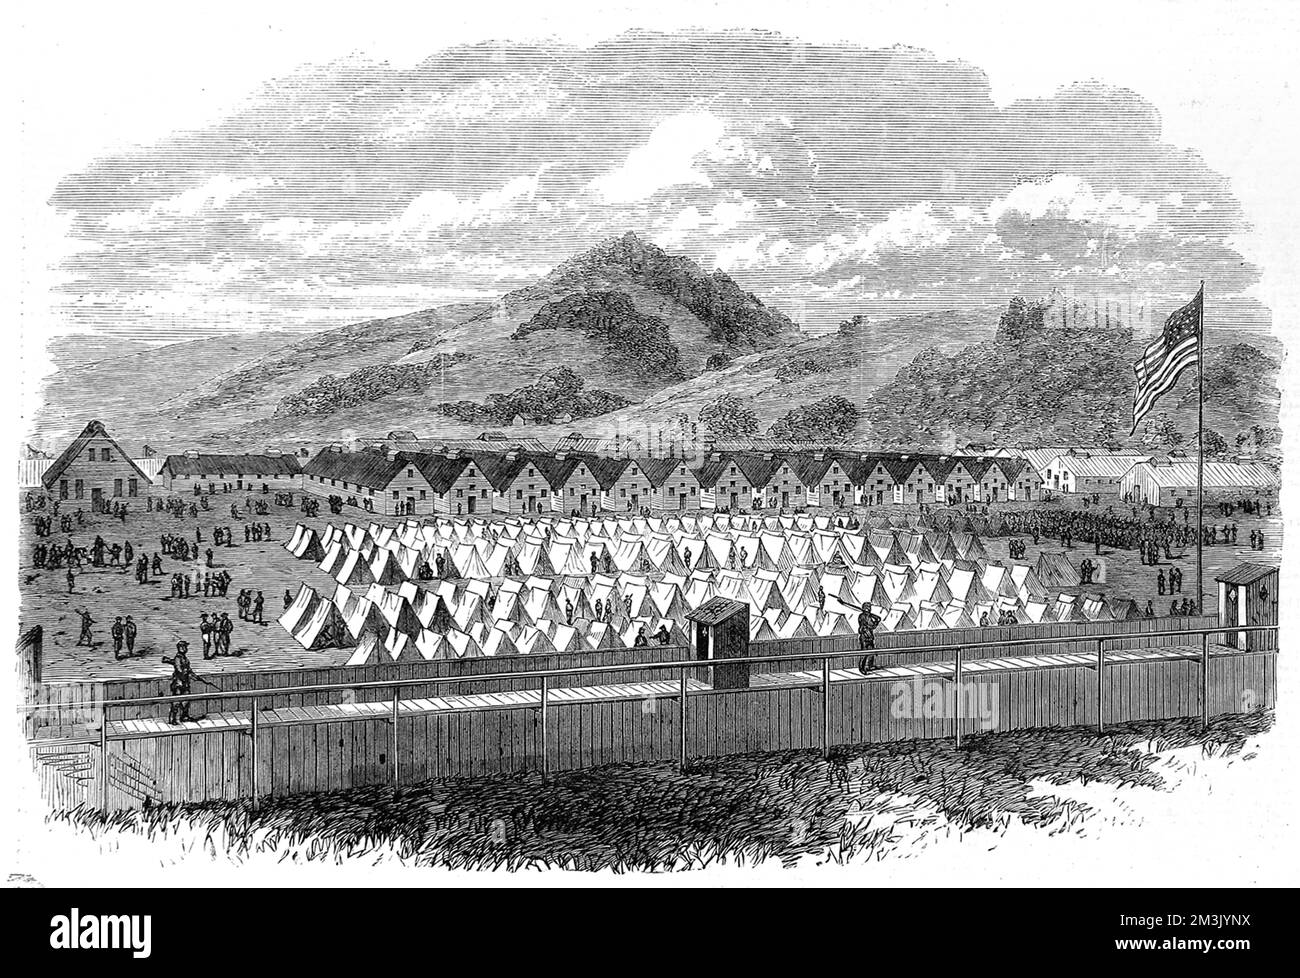 Vista del campo di prigionia di guerra a Elmira, New York, nel 1865. In questo periodo la guerra civile americana era quasi finita e il campo di Elmira era pieno di soldati confederati catturati. Foto Stock